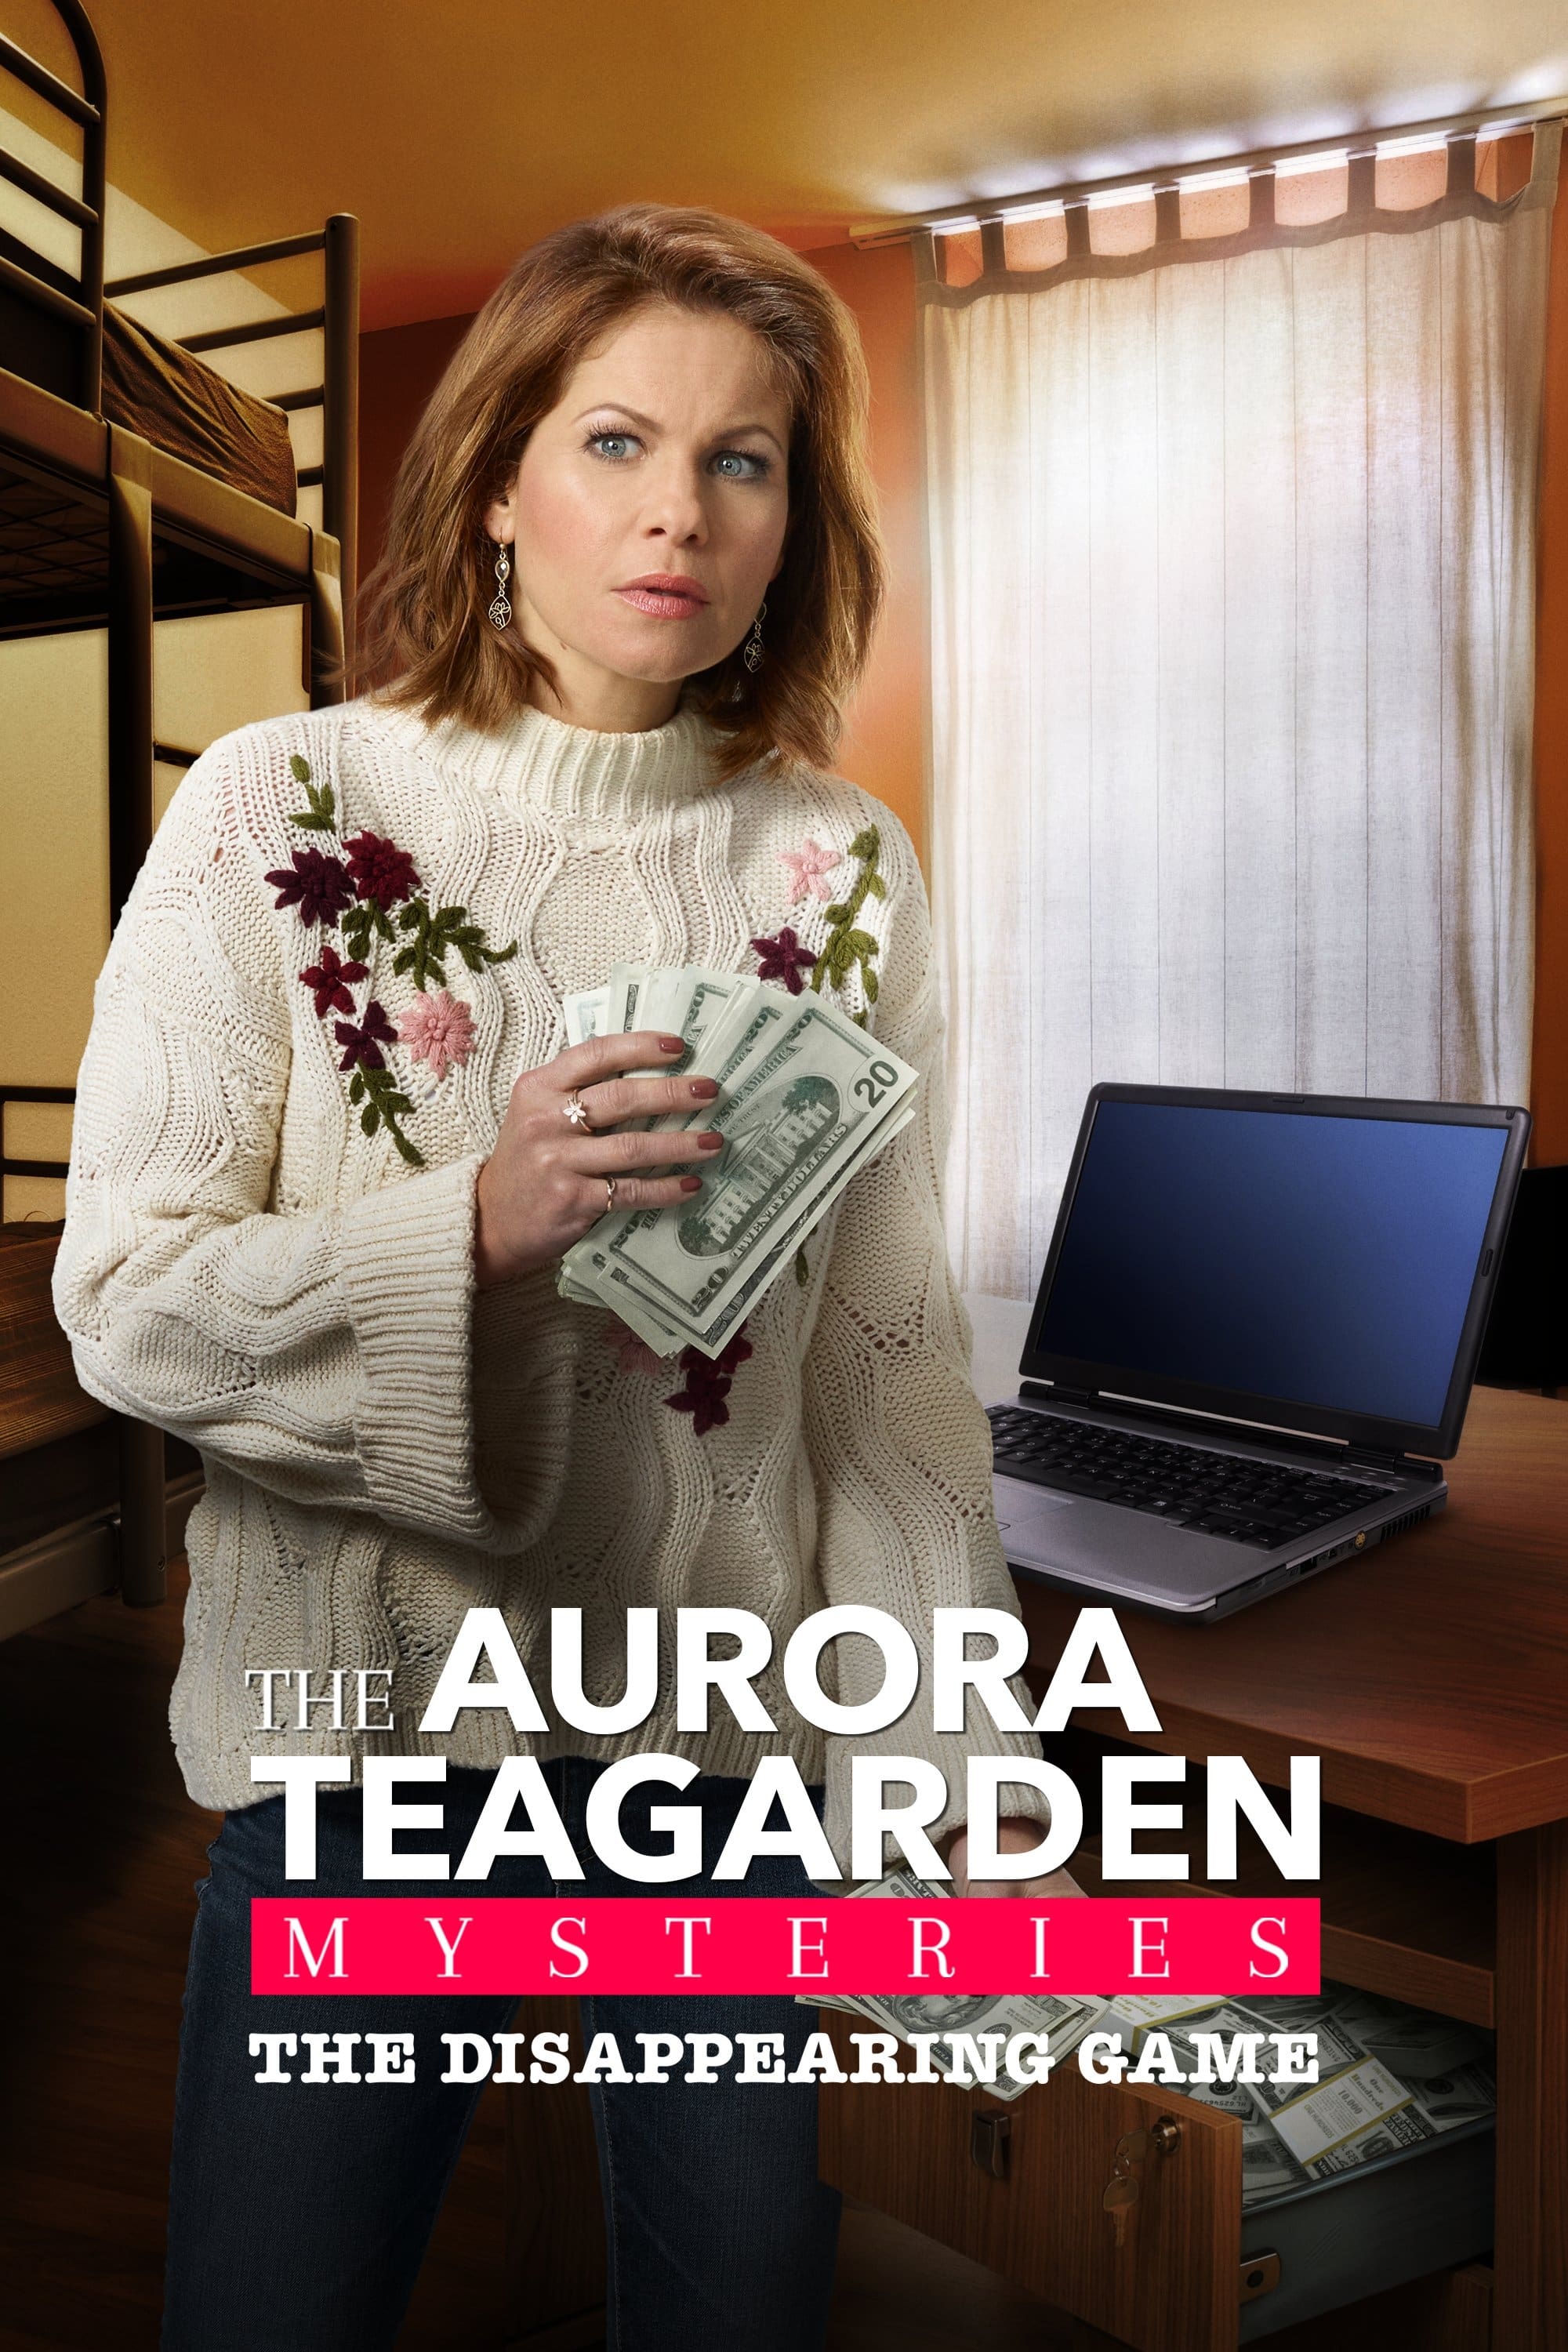 Dead Over Heels: An Aurora Teagarden Mystery